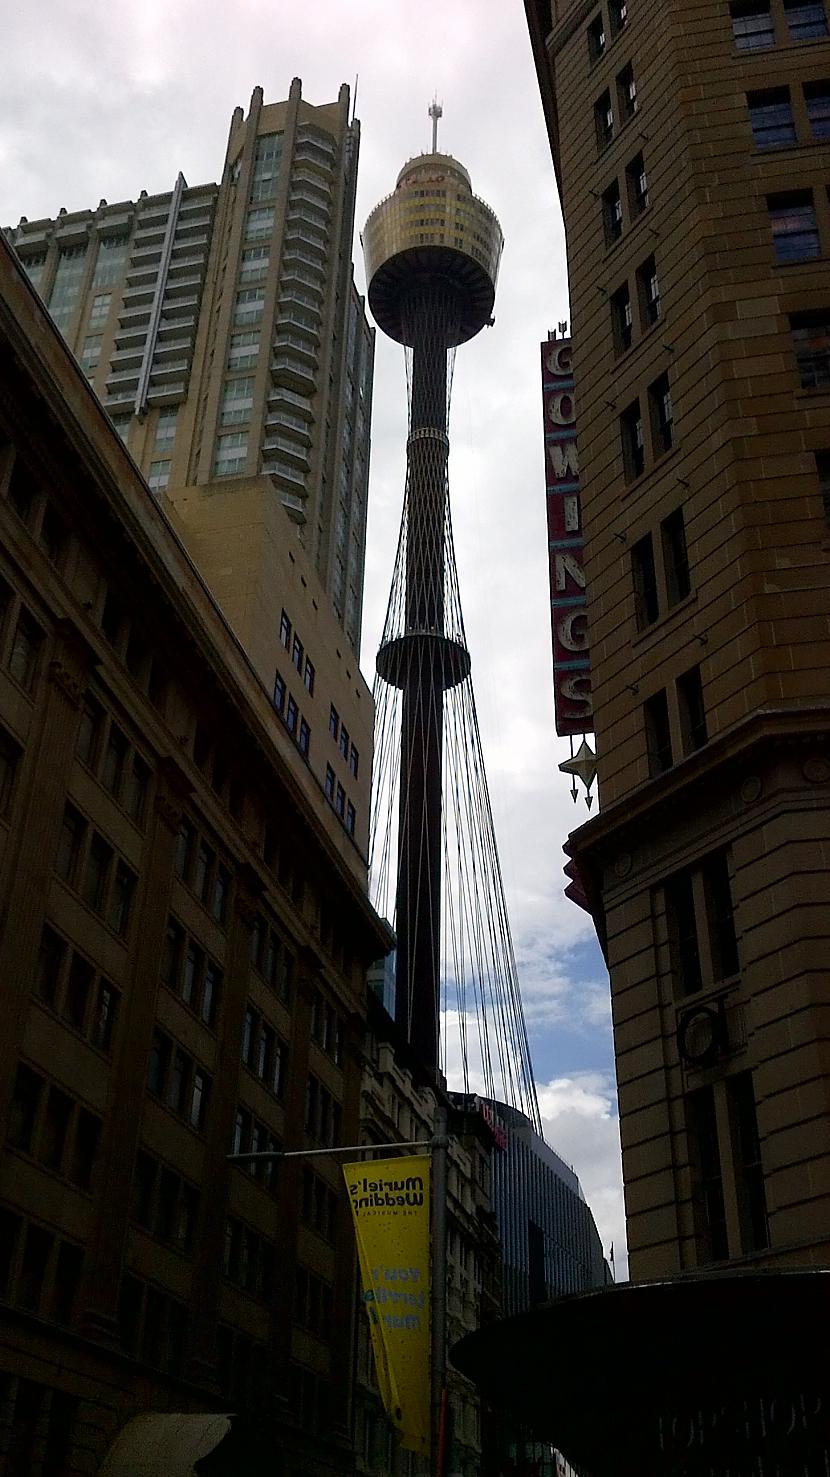  Autors: turistsr@speles Sidneja, agrā pavasarī! :)